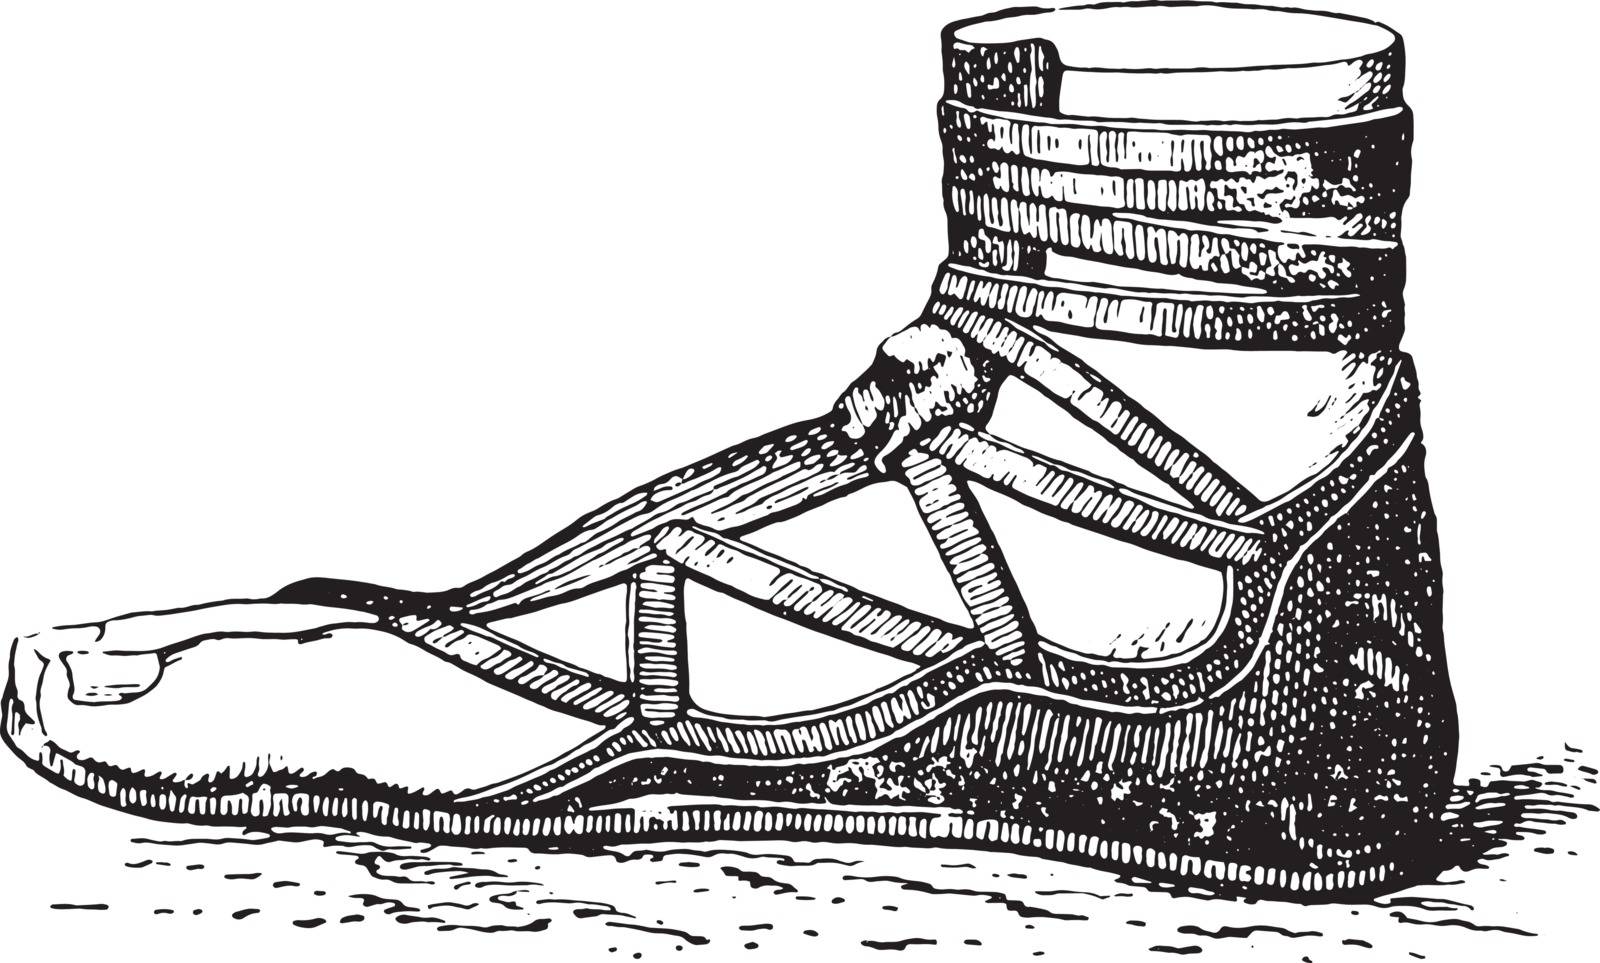 Greek shoe, vintage engraved illustration.
